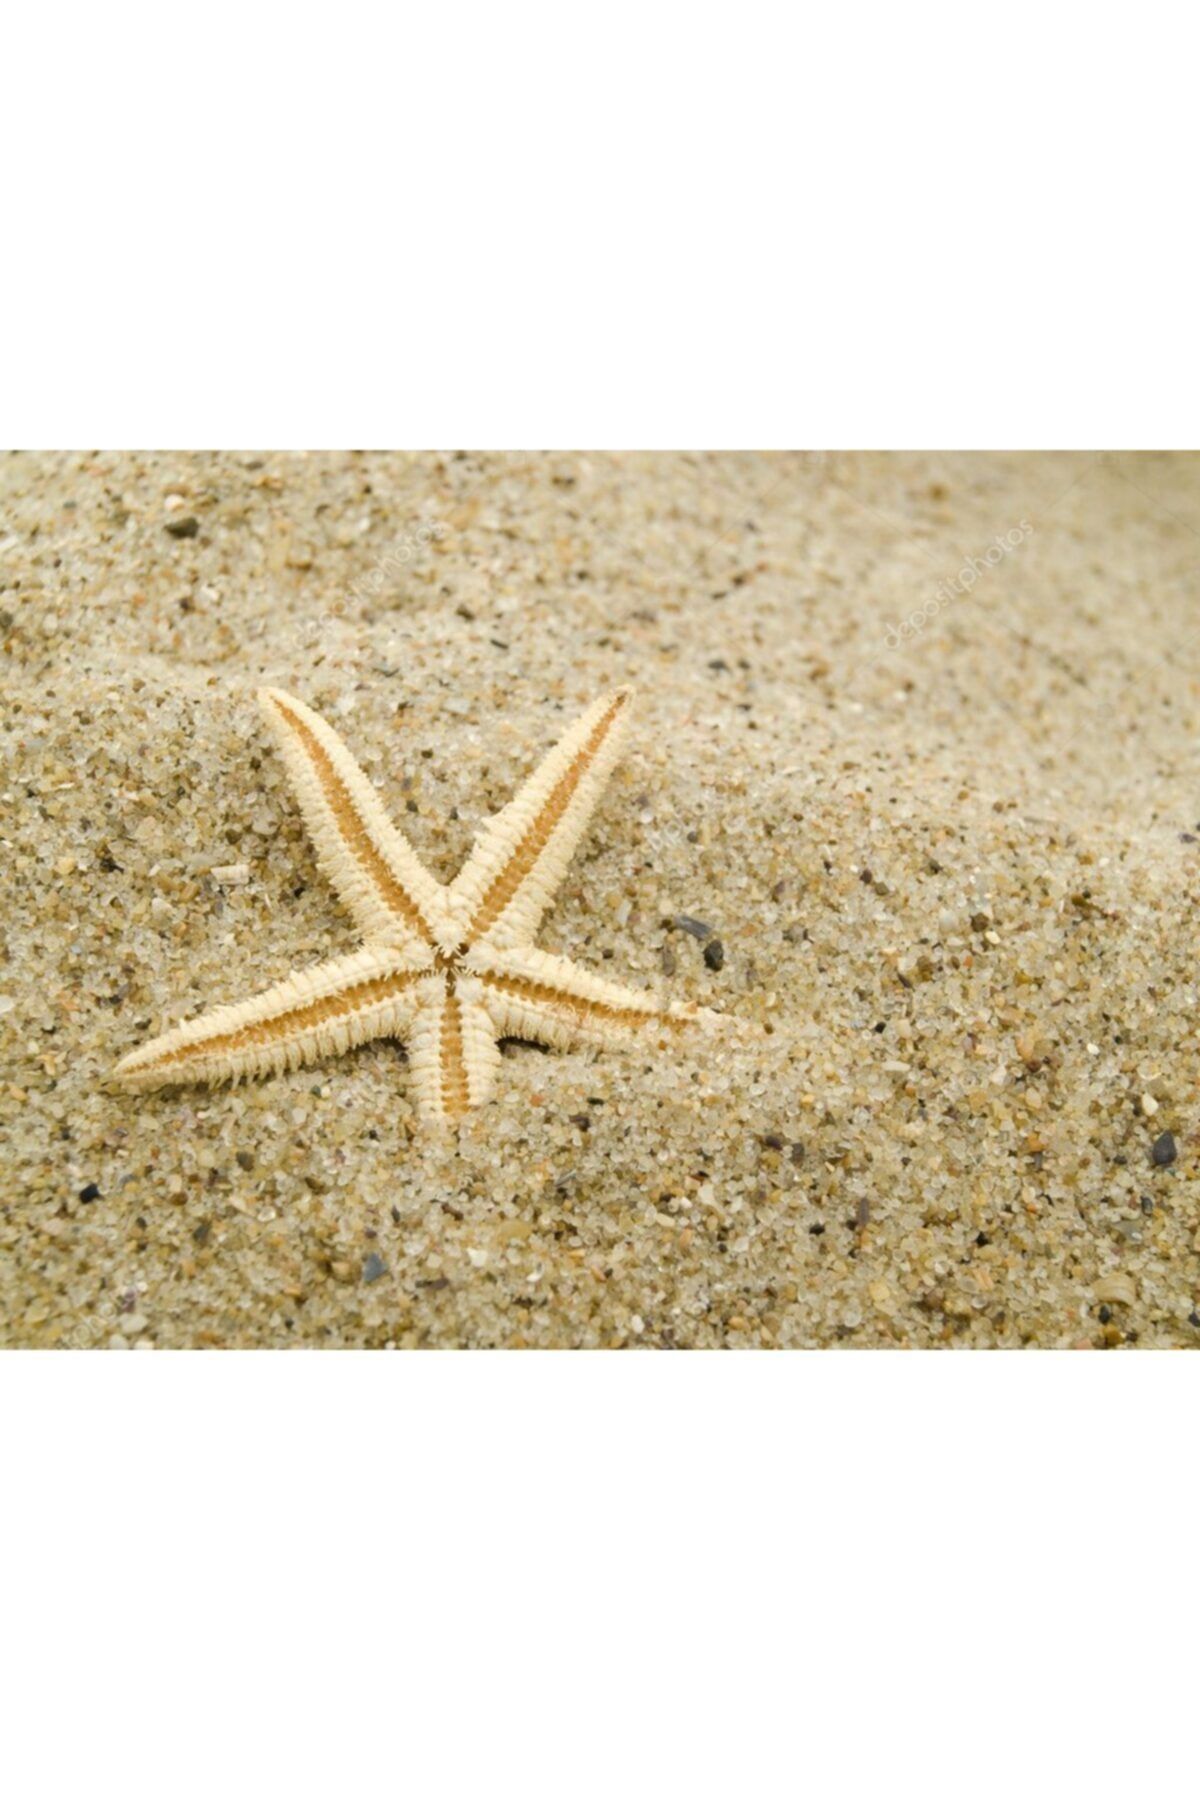 Aker Hediyelik Deniz Yıldızı 25 Adet 7cmx10cm Hesaplı Deniz Yıldızları Çoklu Siparişe Özel Ürünler Denizyıldız